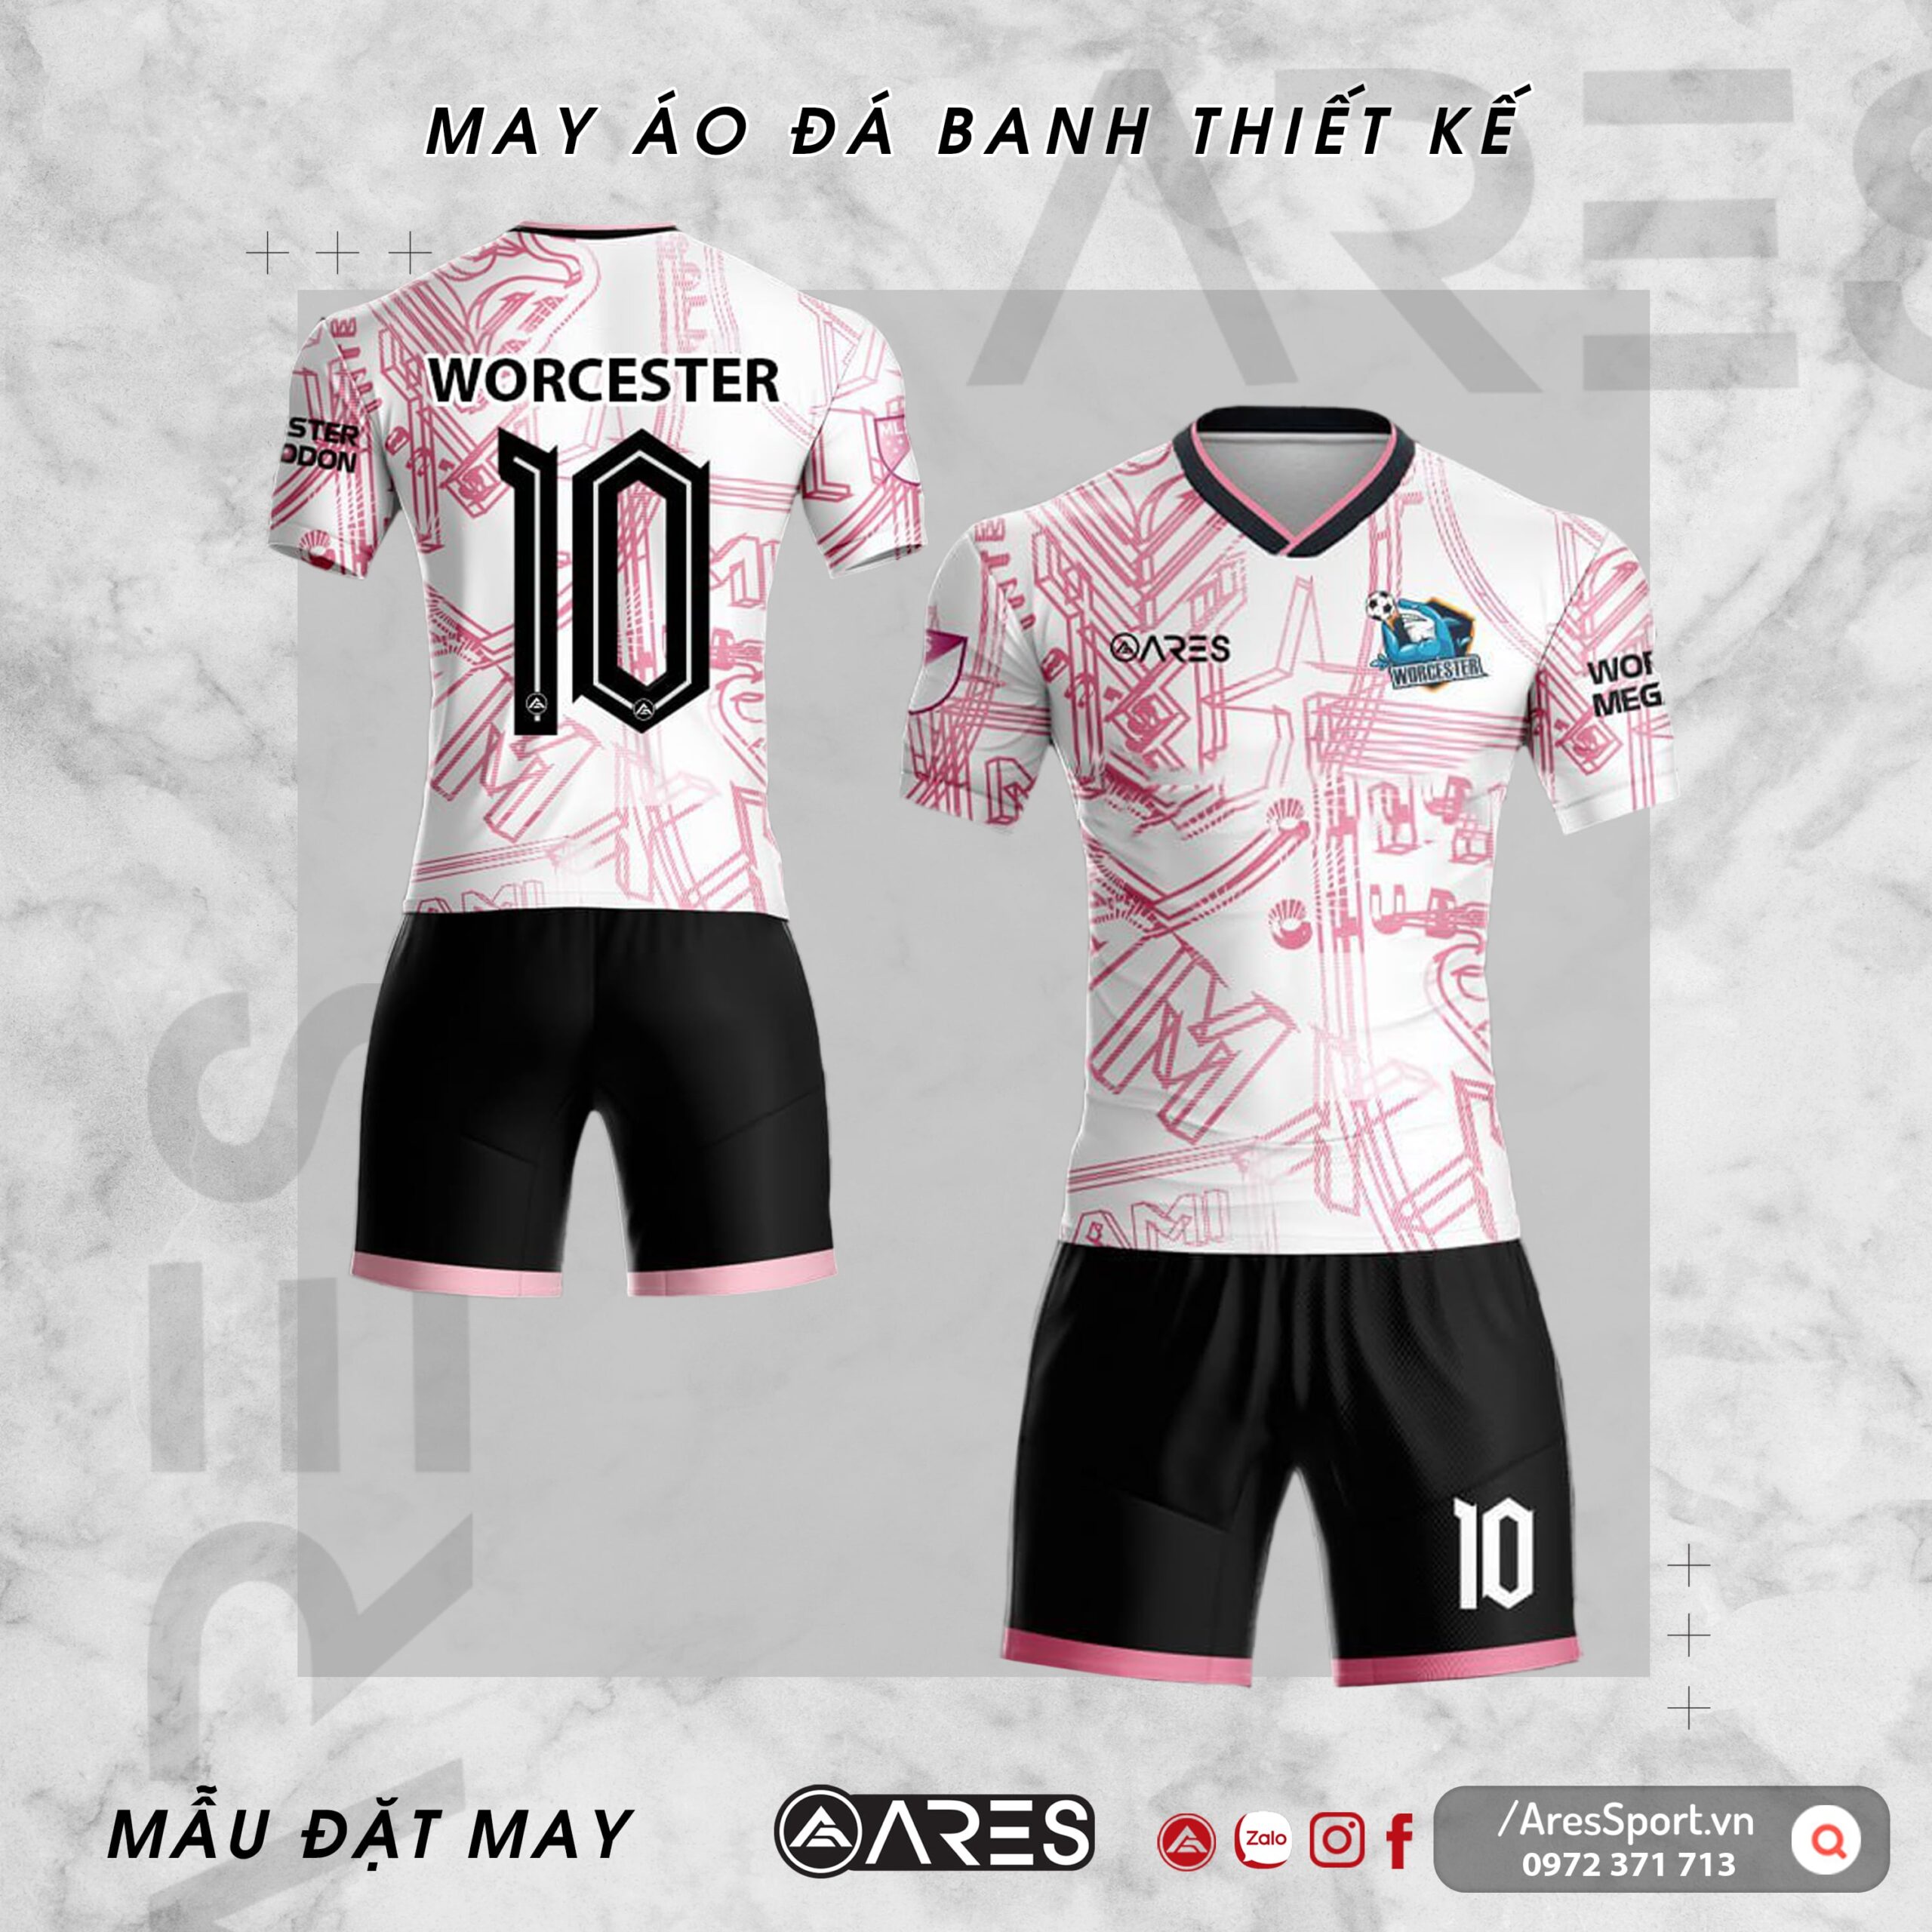 Áo bóng đá tự thiết kế Worcester hồng trắng nhẹ nhàng tinh tế